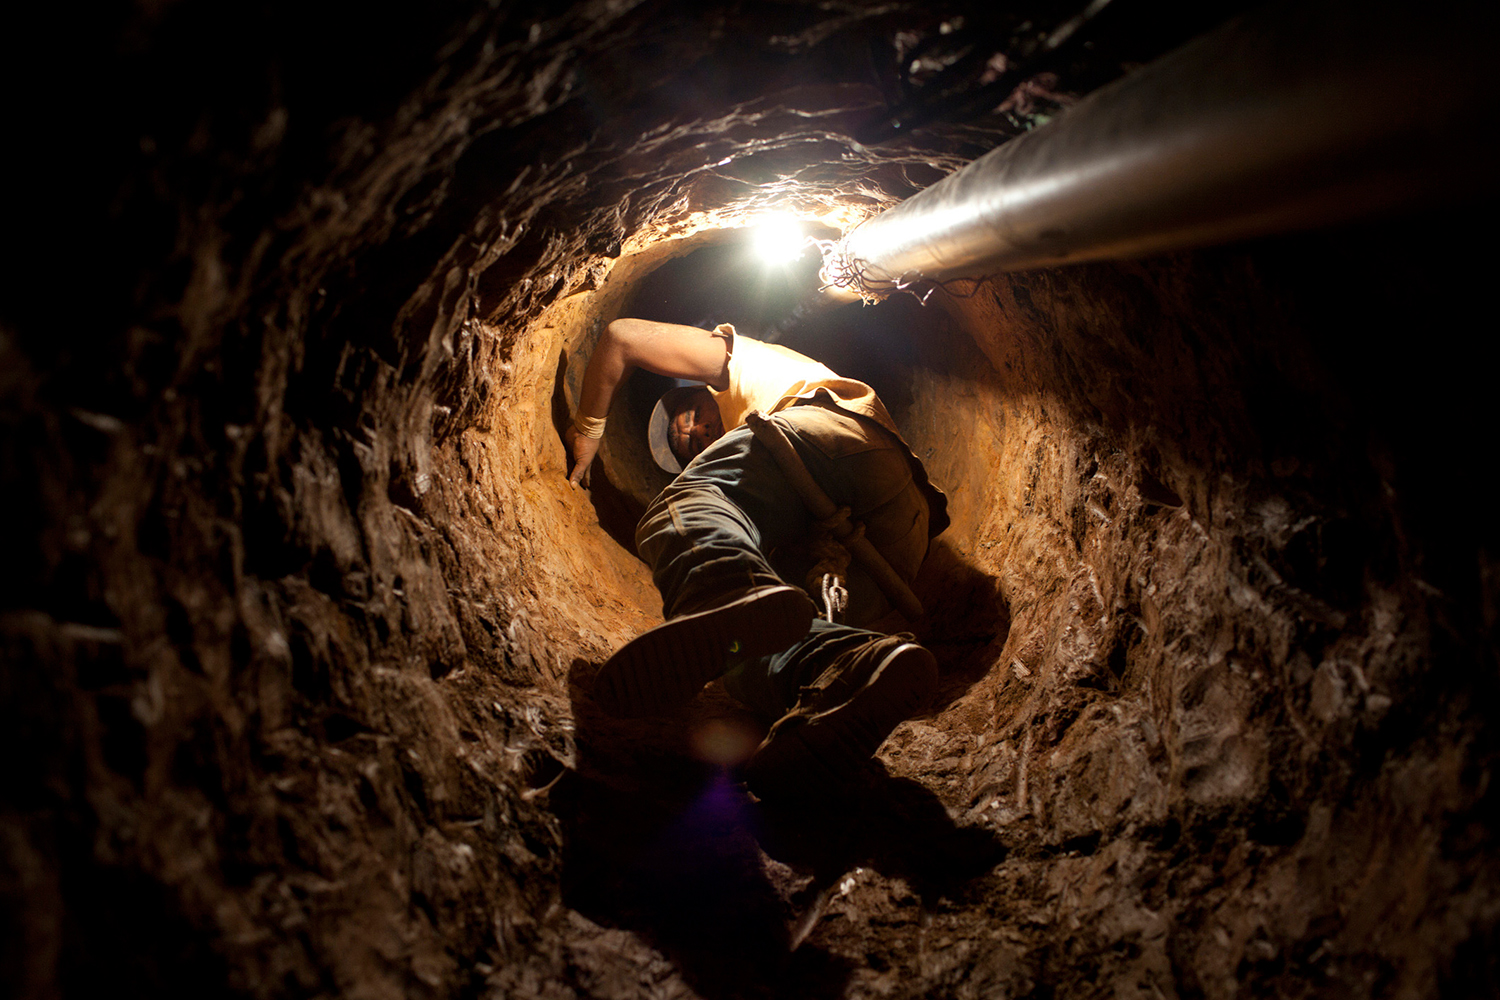 Desaparecen 28 mineros en Venezuela en extrañas circunstancias